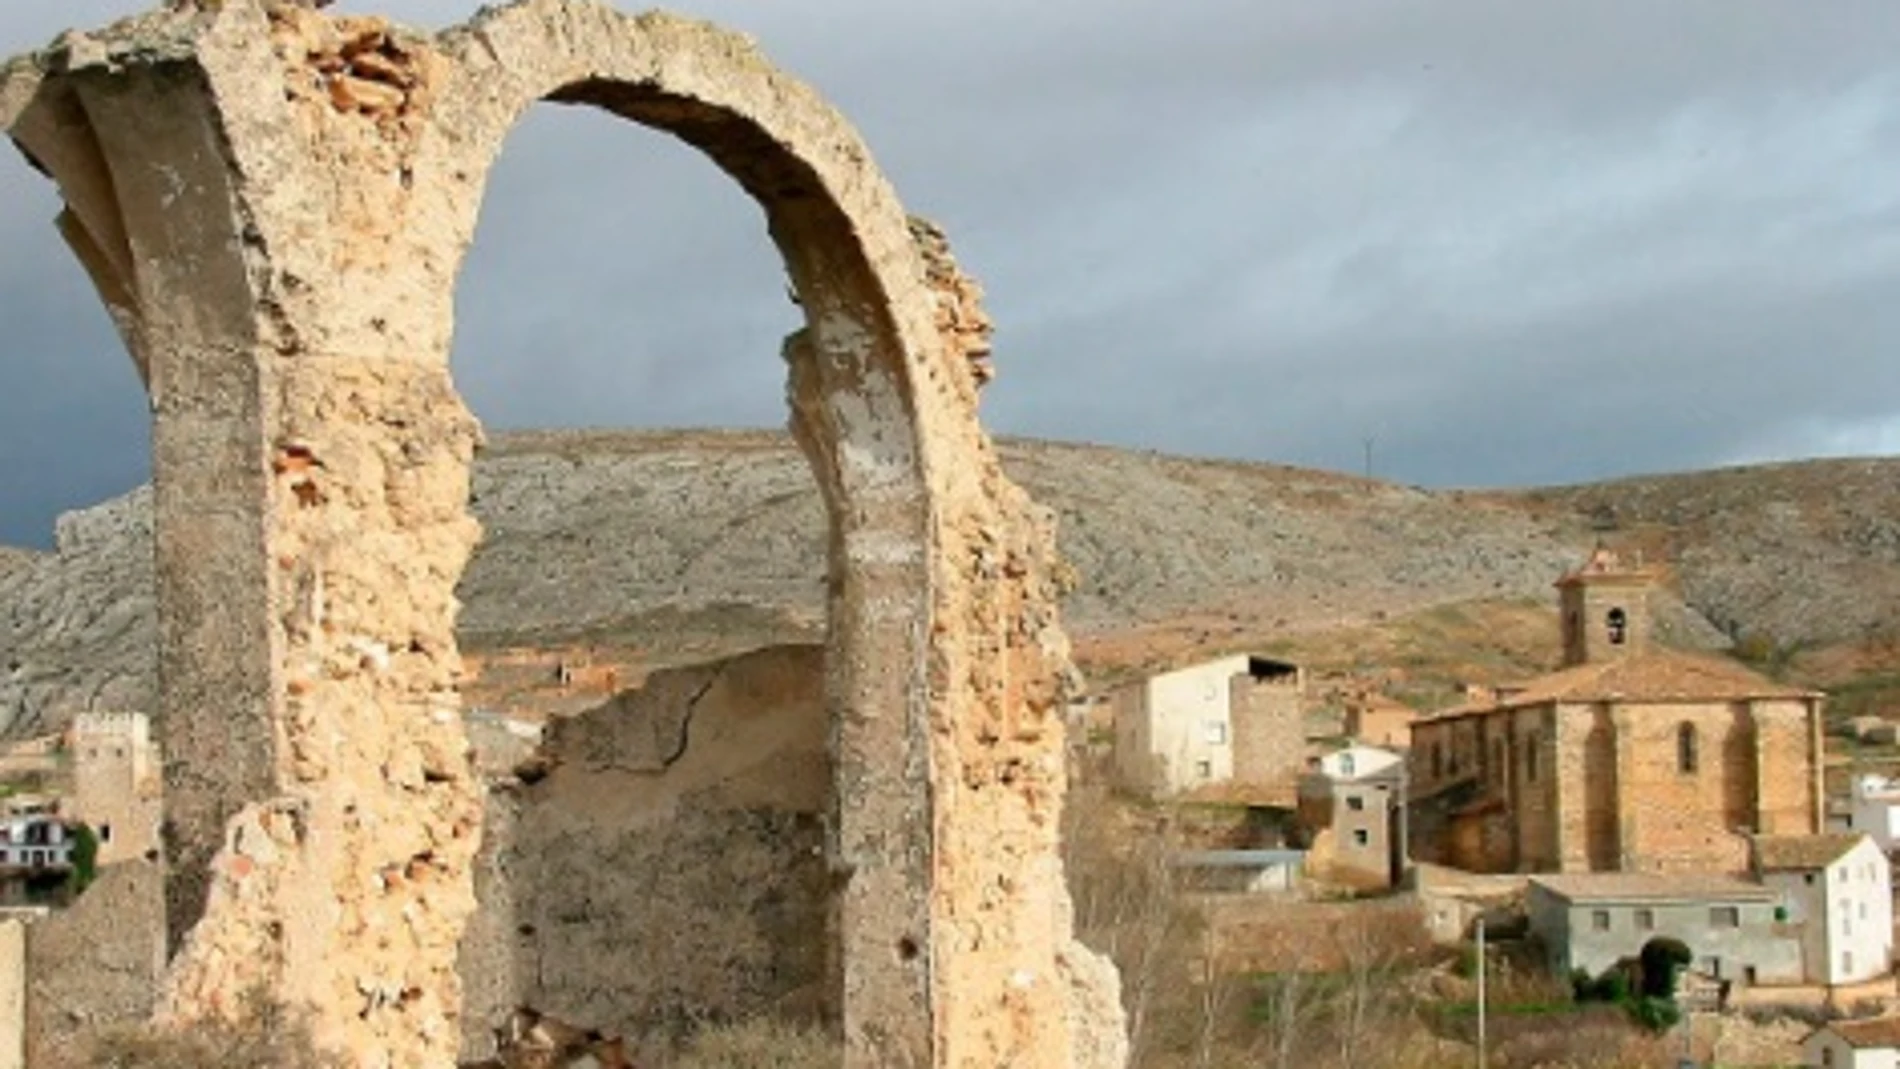 Hallan en Deza (Soria) un campamento romano y una ciudad celtibérica, dos siglos ocultos